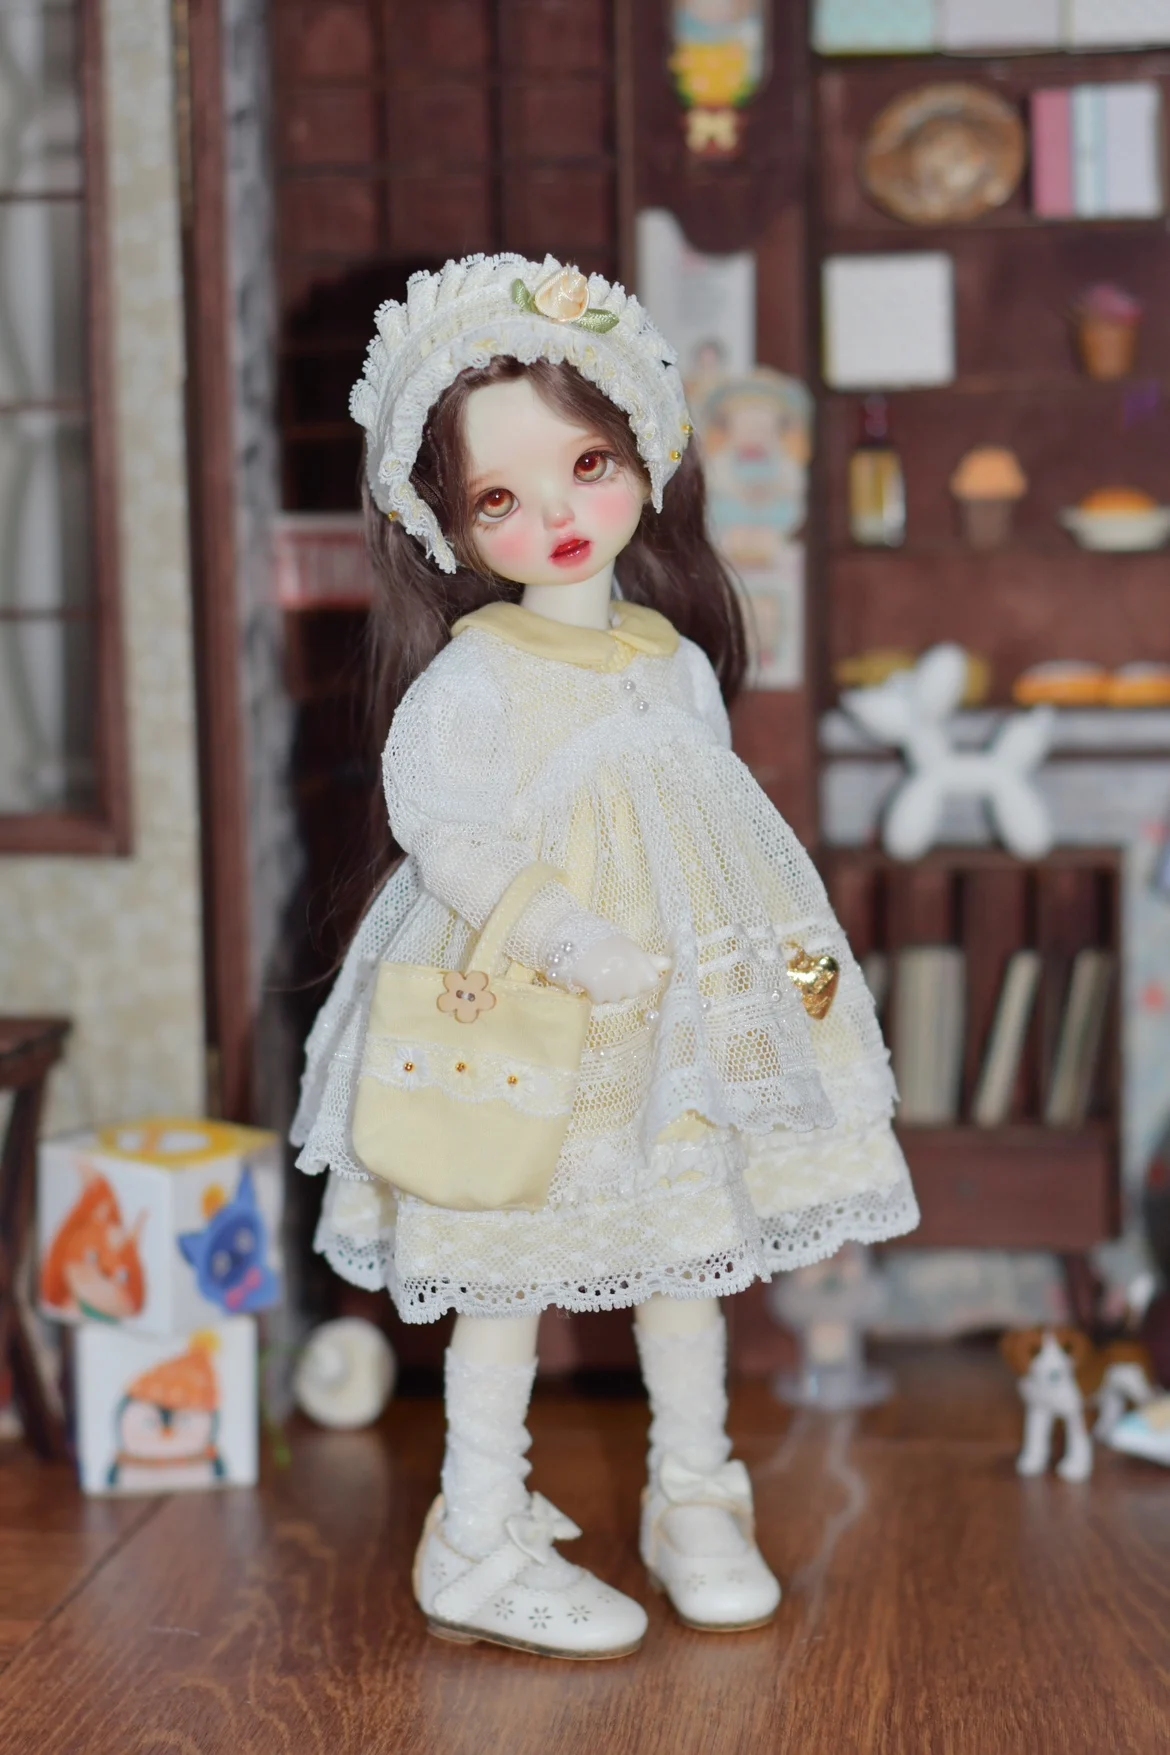 Одежда для куклы BJD подходит для милой кукольной одежды 1/6 размера, комплект милого платья для куклы BJD, аксессуары для куклы 1/6 размера (5 баллов)